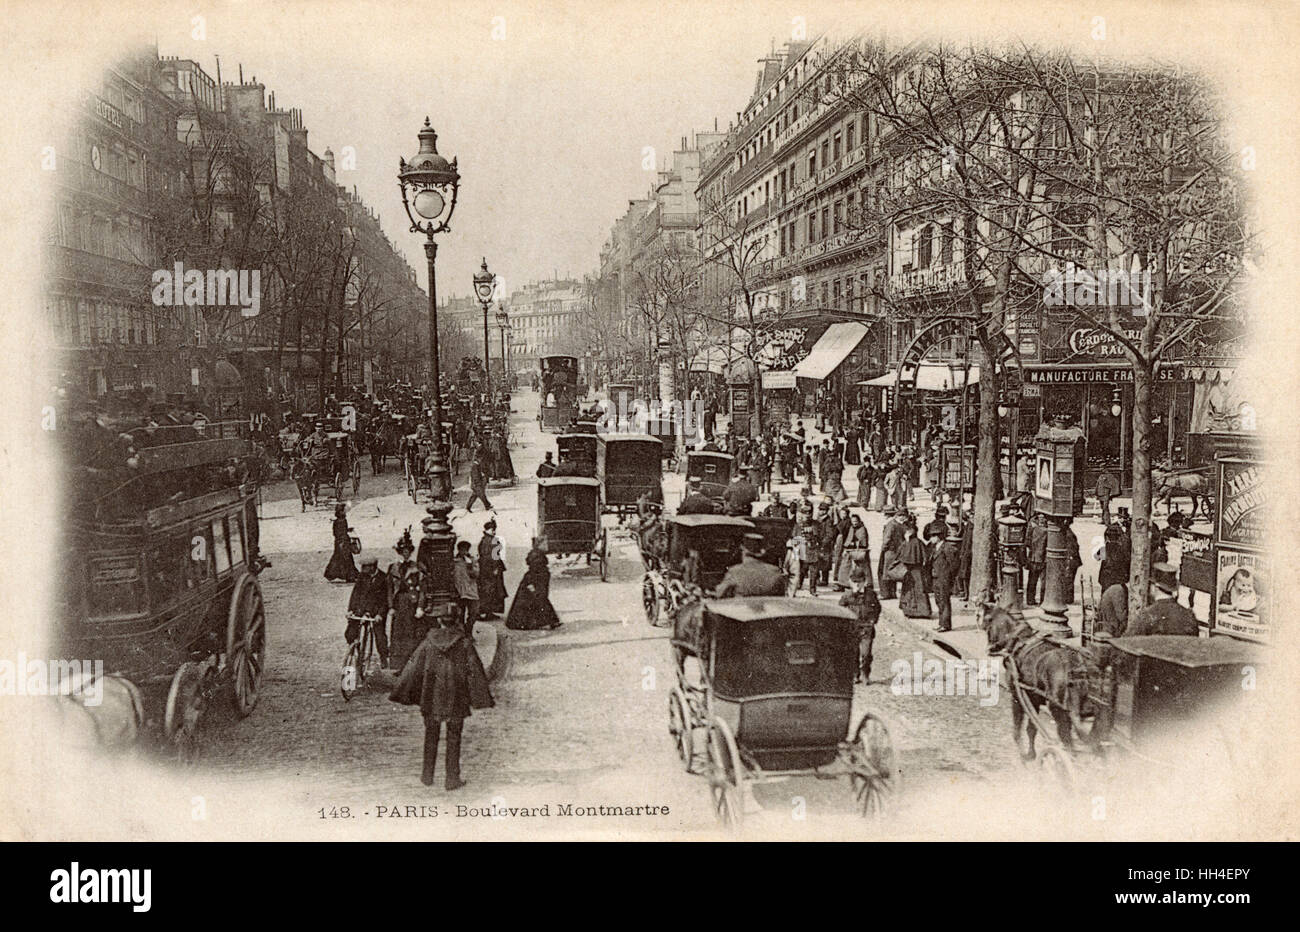 Paris, France - Boulevard Montmartre Stock Photo